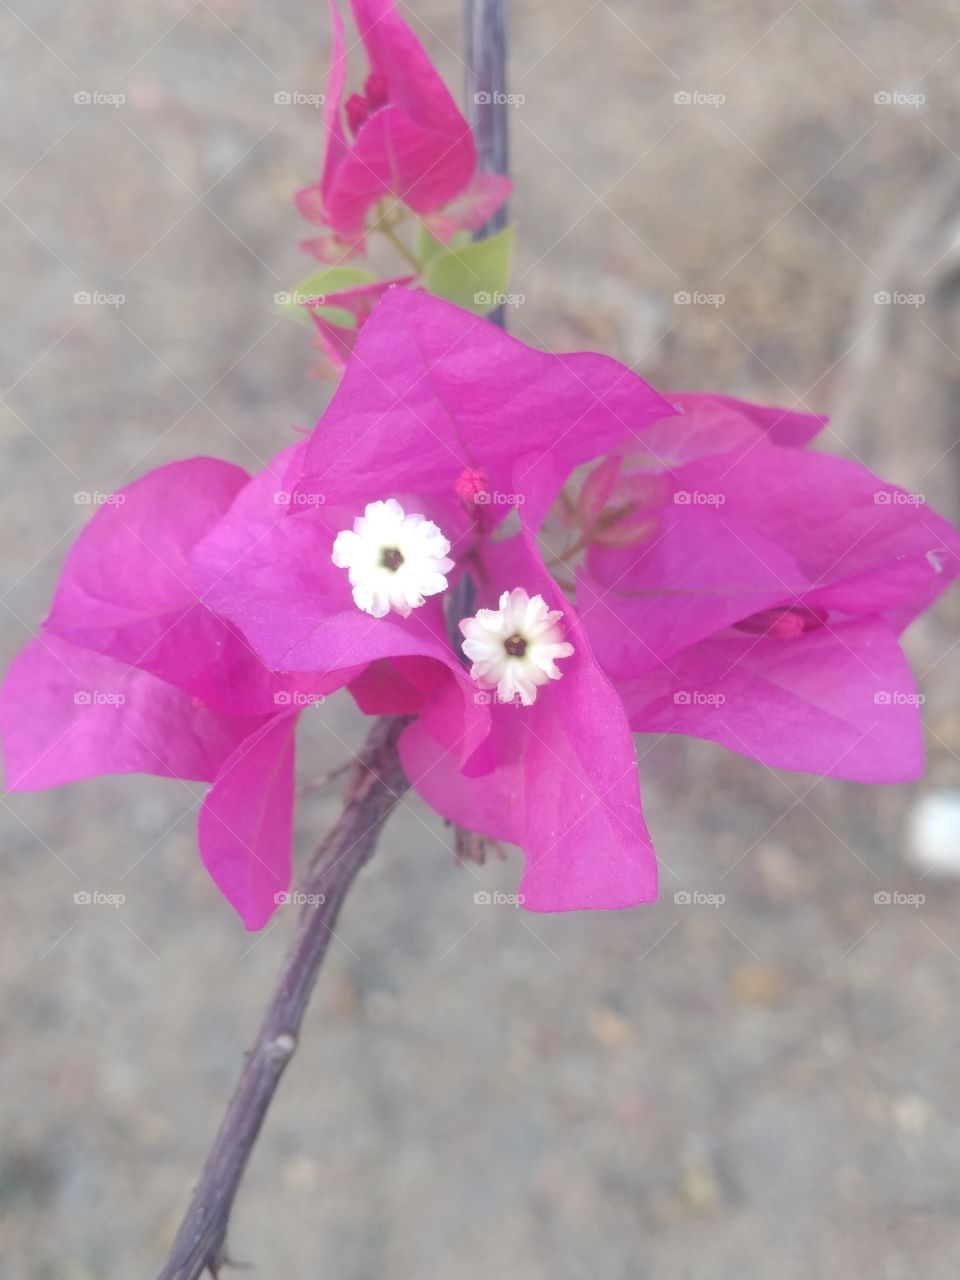 a beautiful flower in my garden